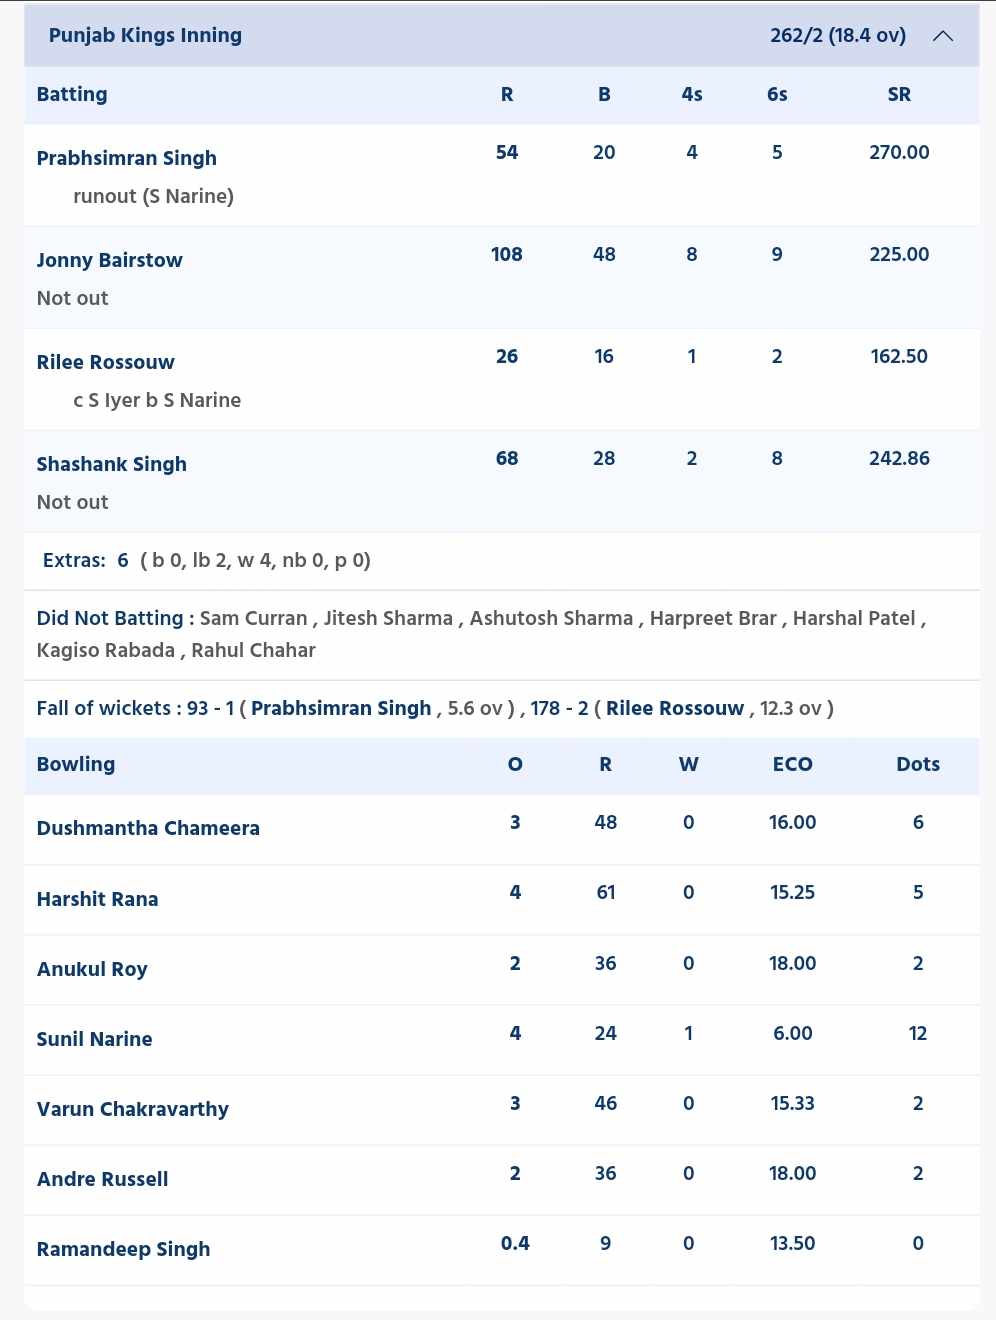 KKR vs PBKS: KKR innings (Credits: CricketAddictor)